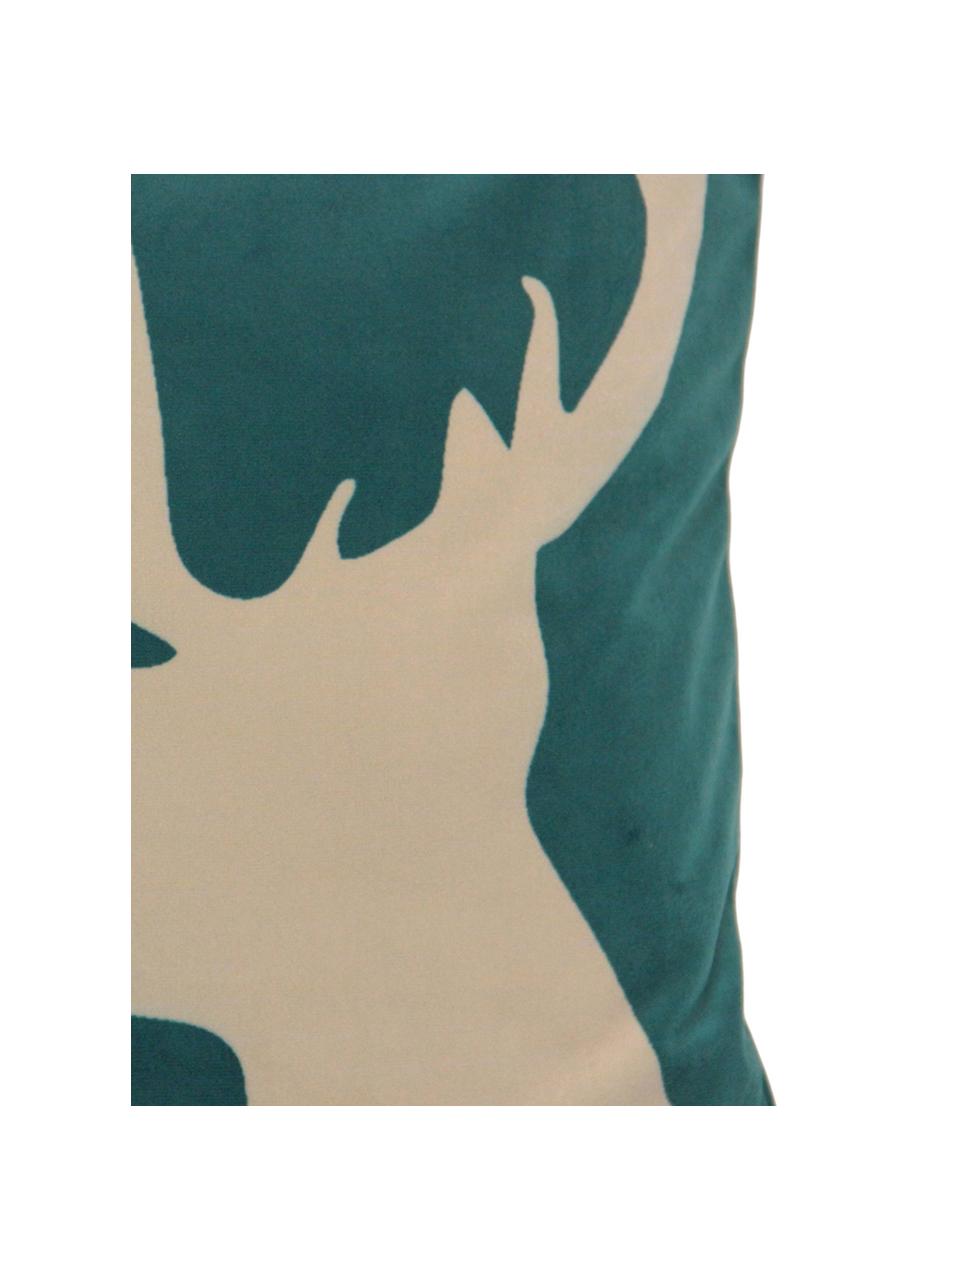 Fluwelen kussenhoes Reindeer, Polyesterfluweel, Groen, beige, 45 x 45 cm